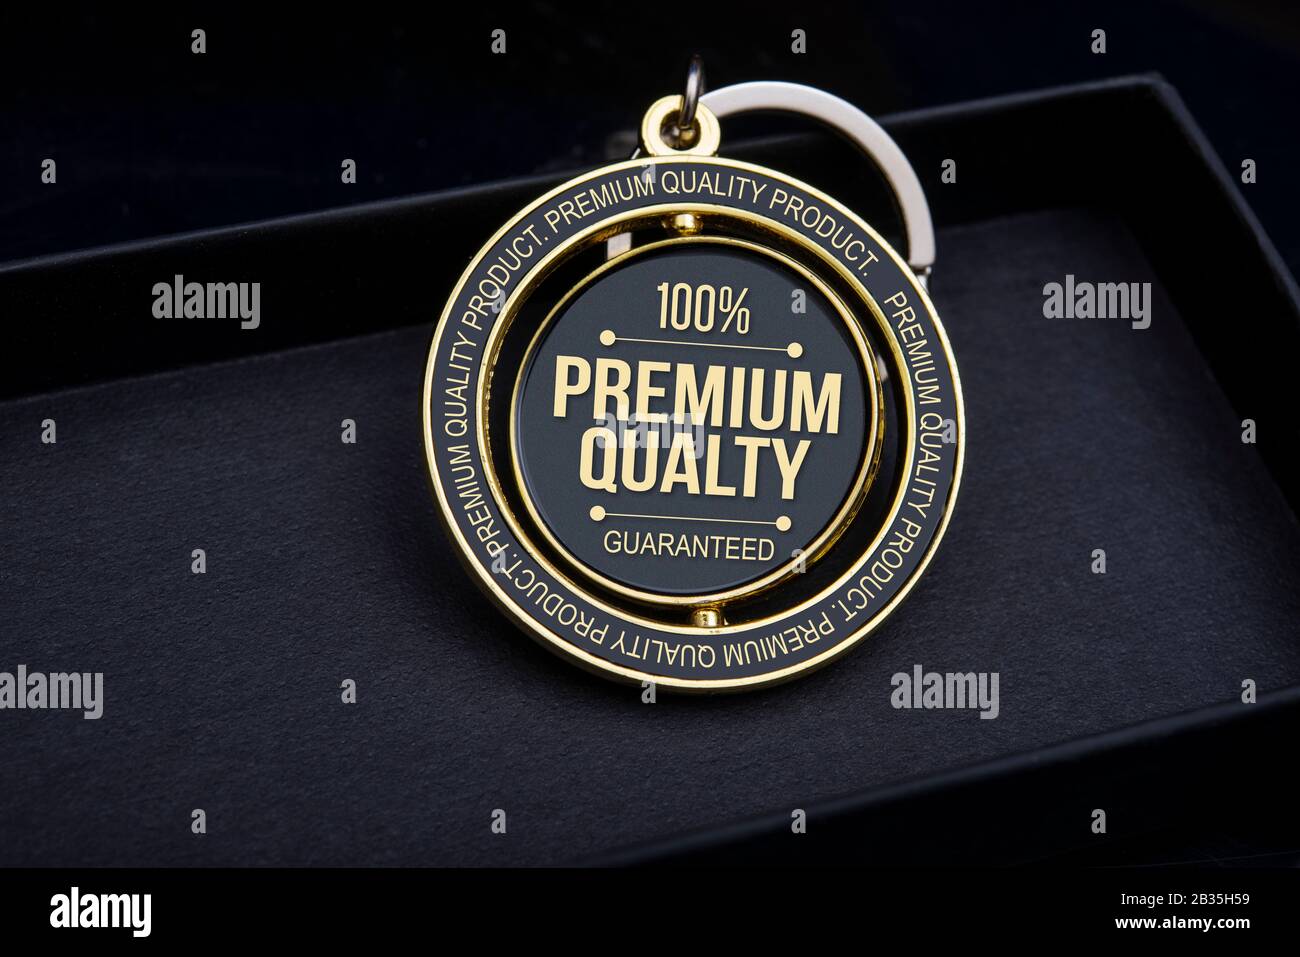 Testo del 100% di qualità premium garantita su badge e portachiavi Foto Stock